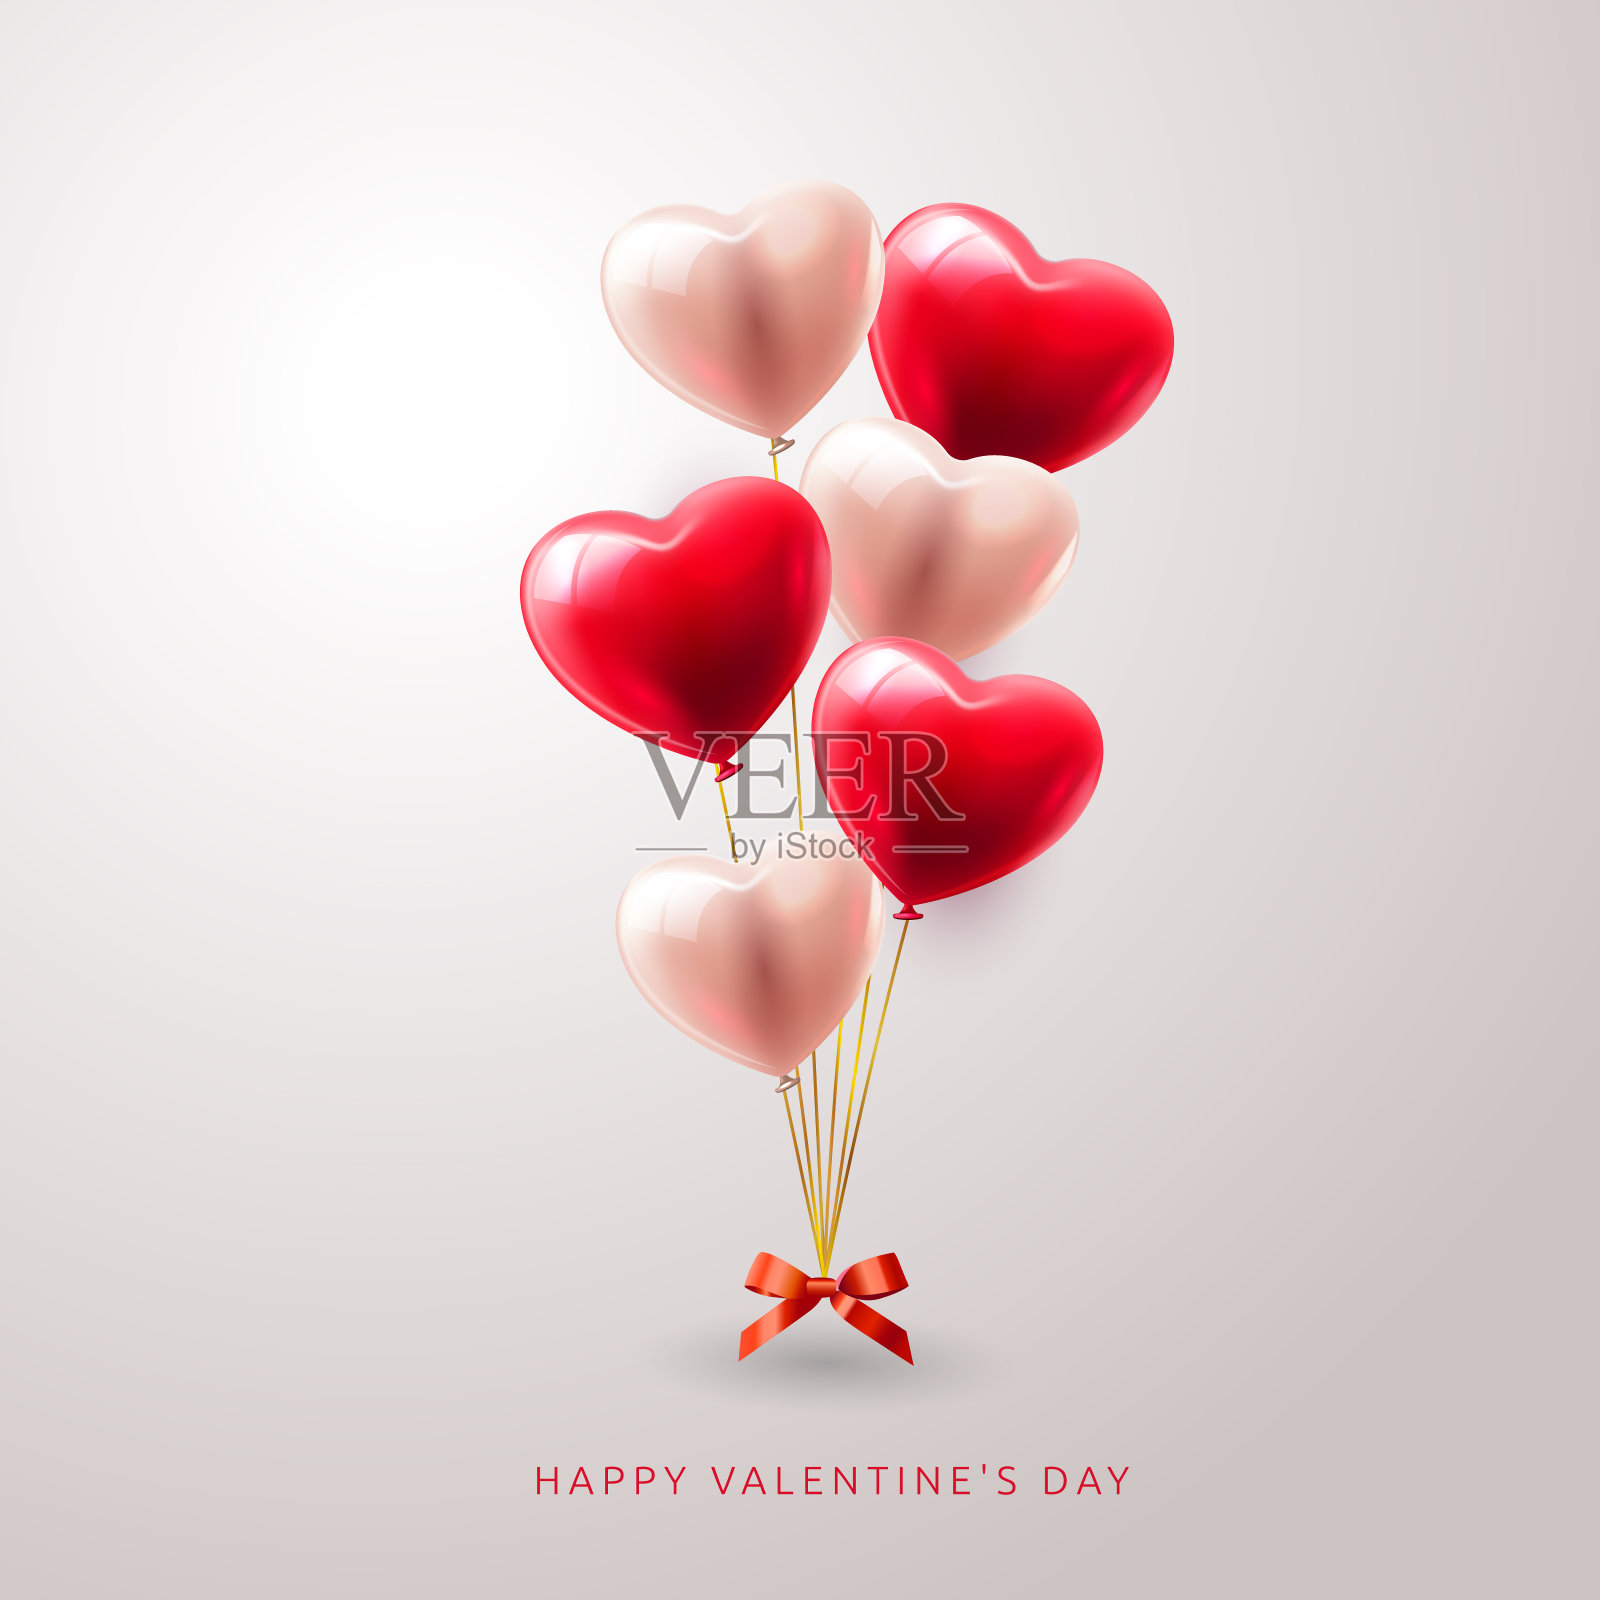 3D现实的红心气球飞行与爱的模式和快乐的情人节文本问候在背景。矢量图插画图片素材